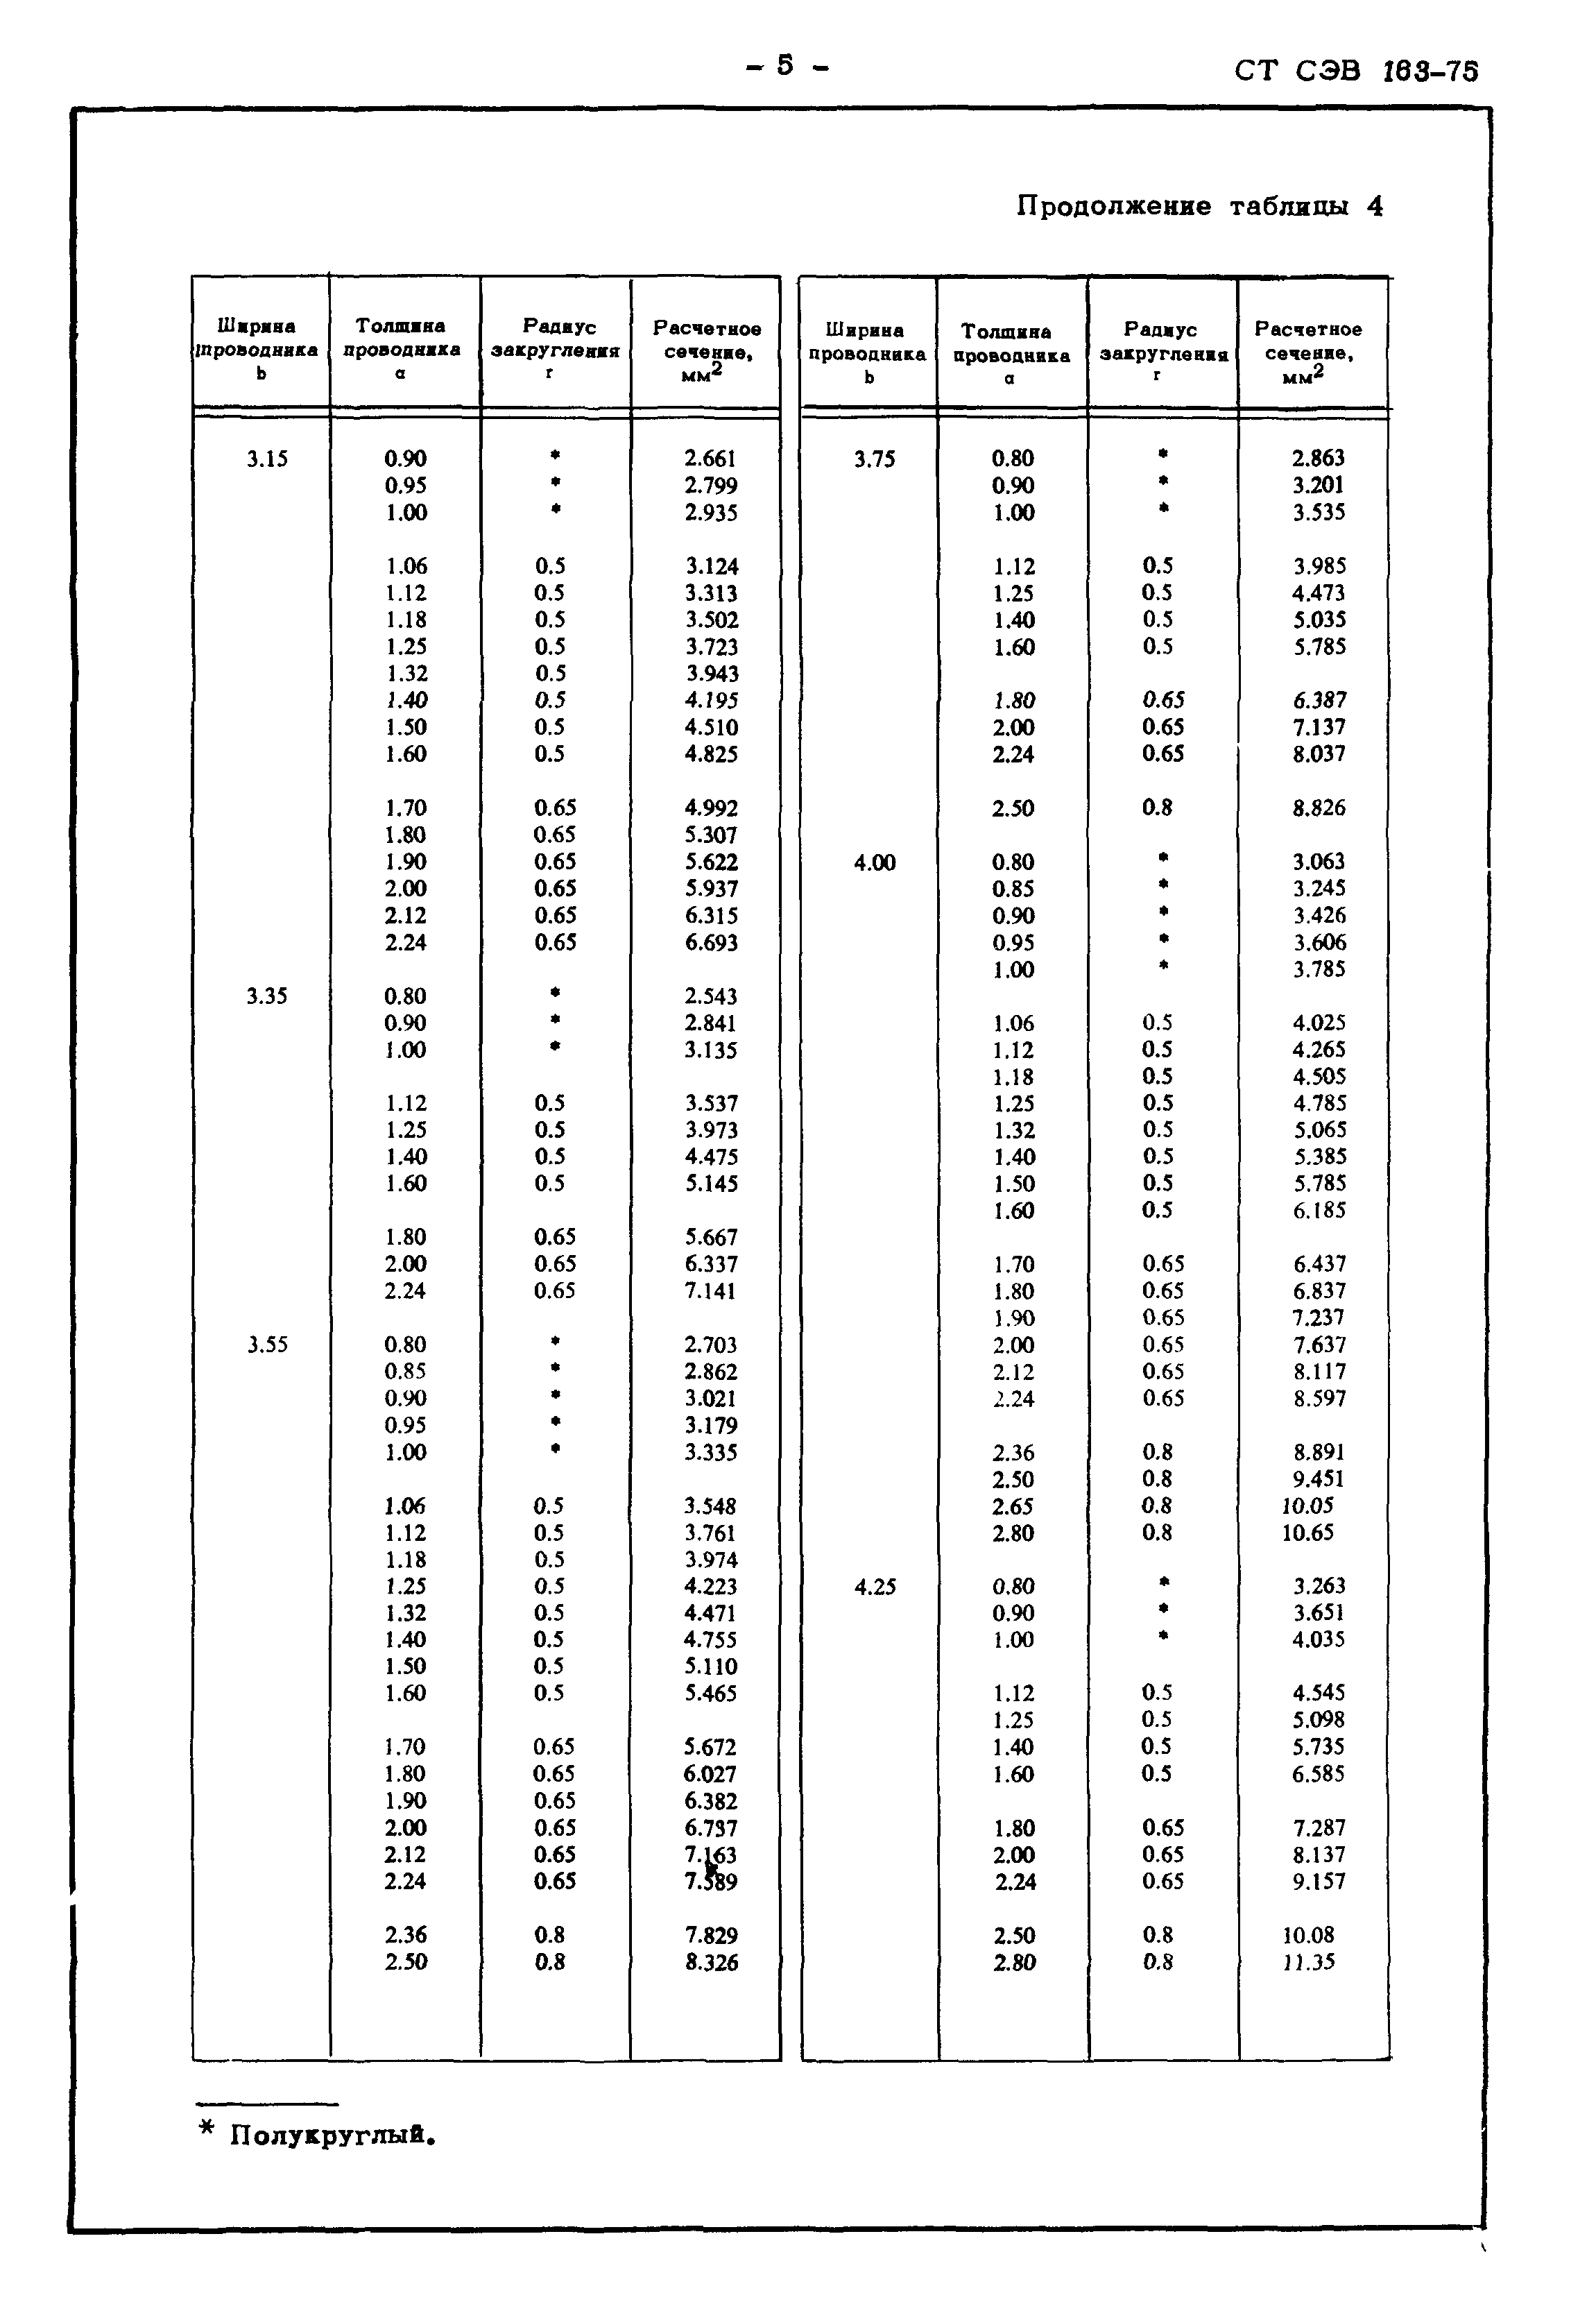 СТ СЭВ 163-75